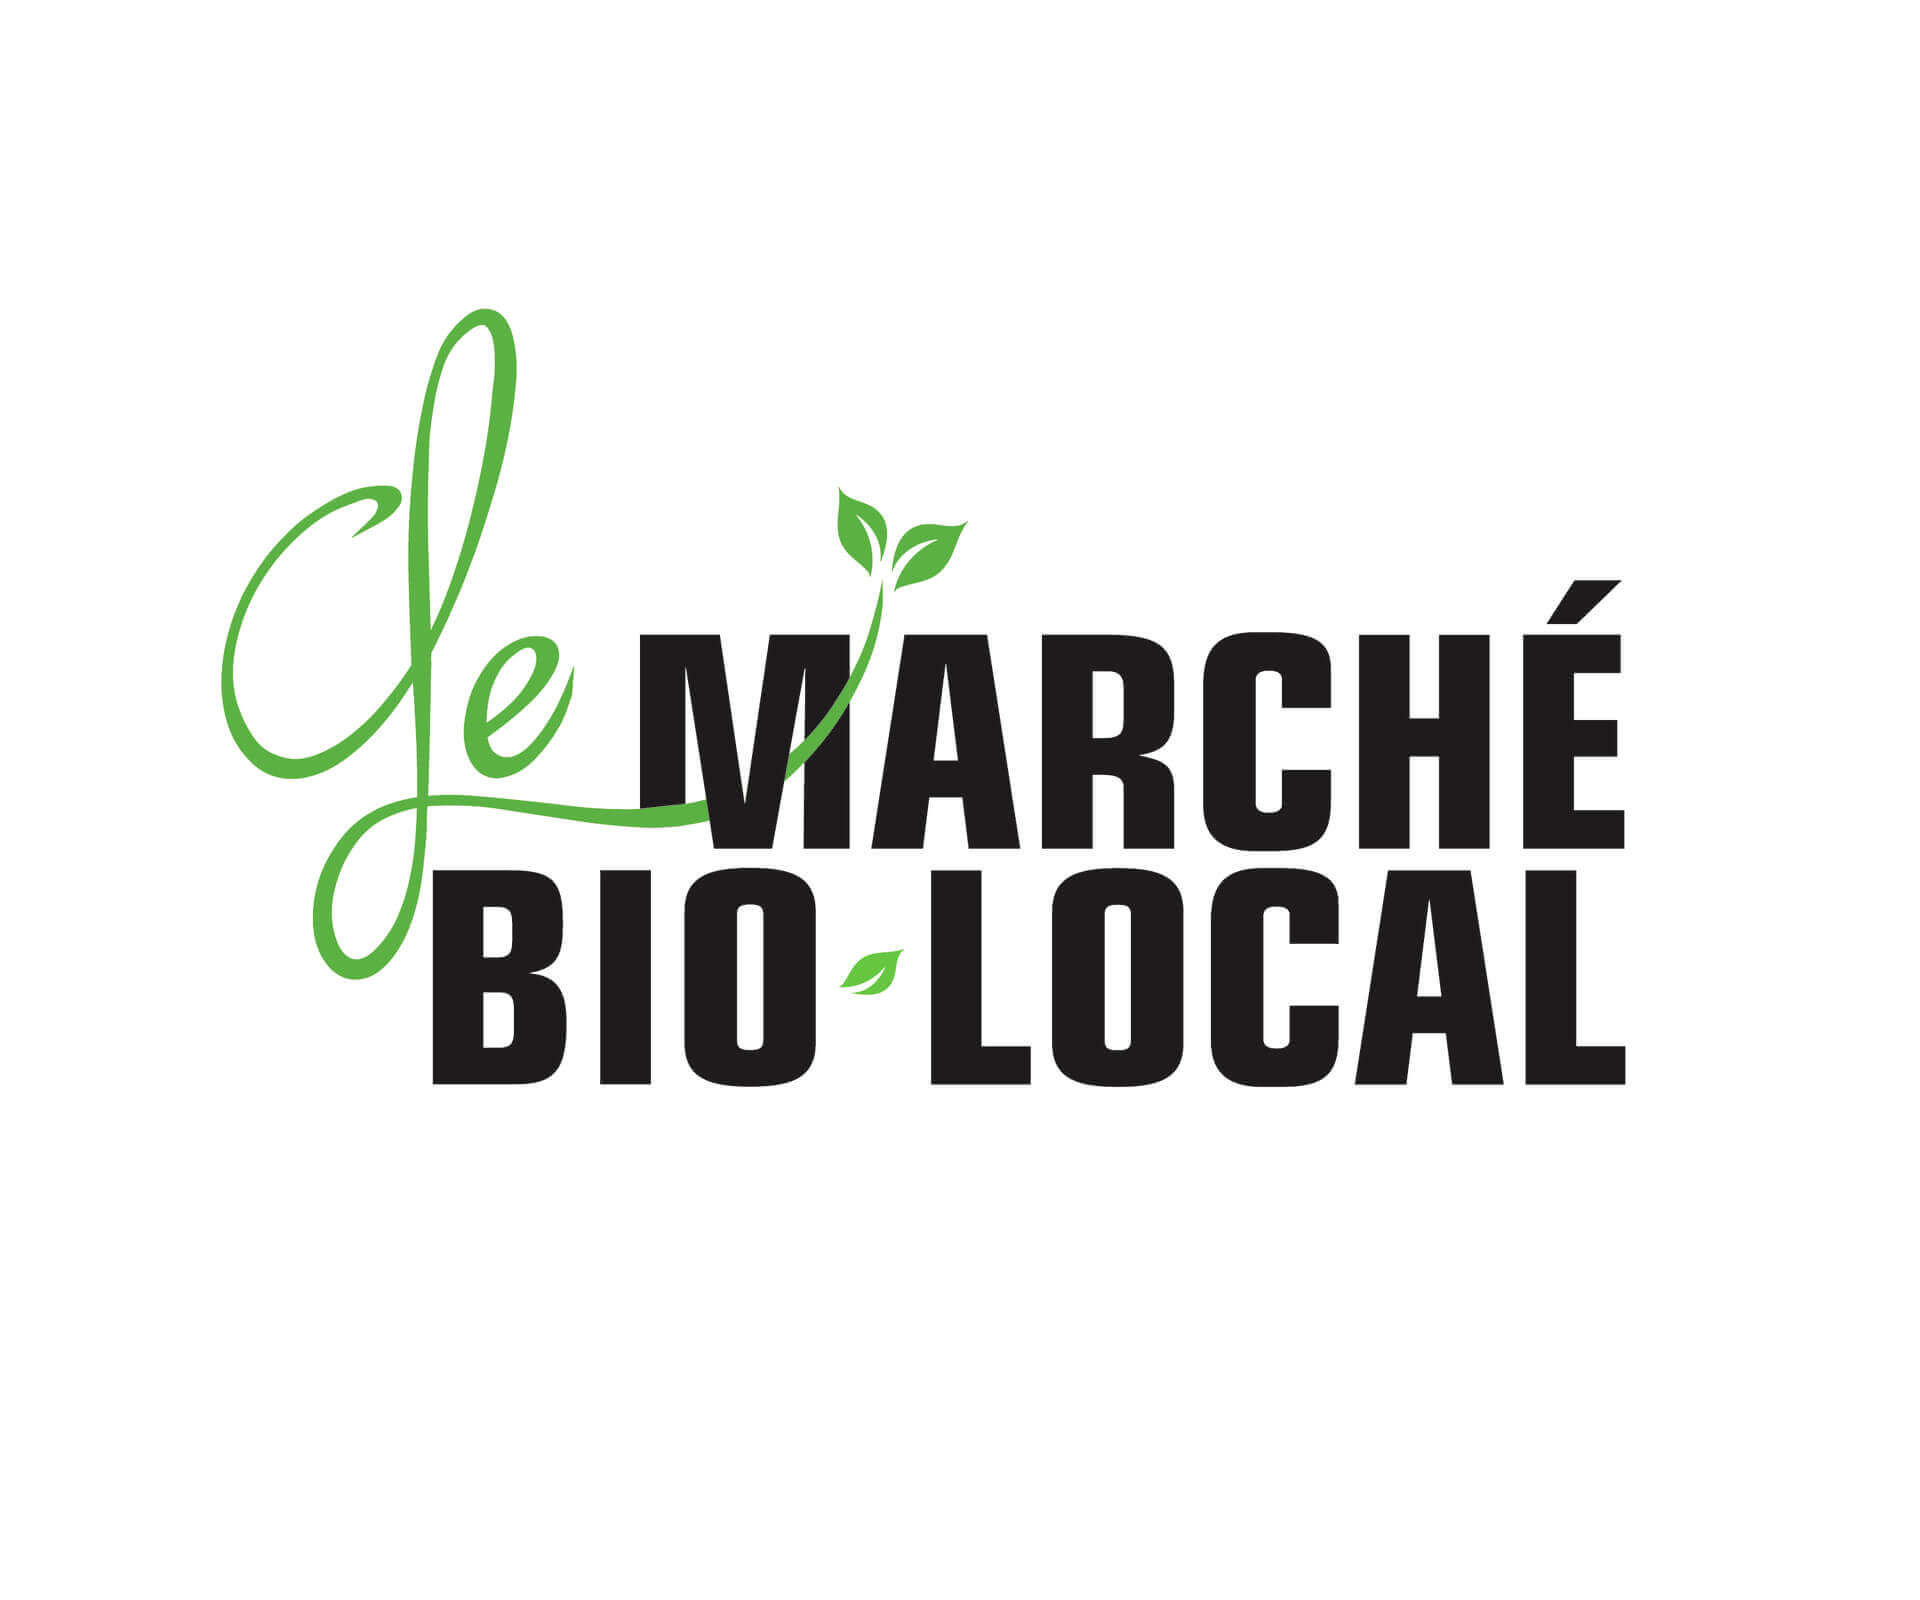 <p>Le marché bio-local, c'est des producteurs certifiés biologiques et locaux qui se rassemblent afin d'offrir à la population des produits frais de qualité. Il s'agit également d'une belle occasion d'échanger avec des producteurs québécois et d'encourager l'économie locale. En achetant local, c'est aussi l'opportunité de réduire son empreinte écologique! Pour davantage de détails, visitez <a href="http://lemarchebiolocal.com/" target="_blank" rel="noopener">lemarchebiolocal.com</a>.</p>